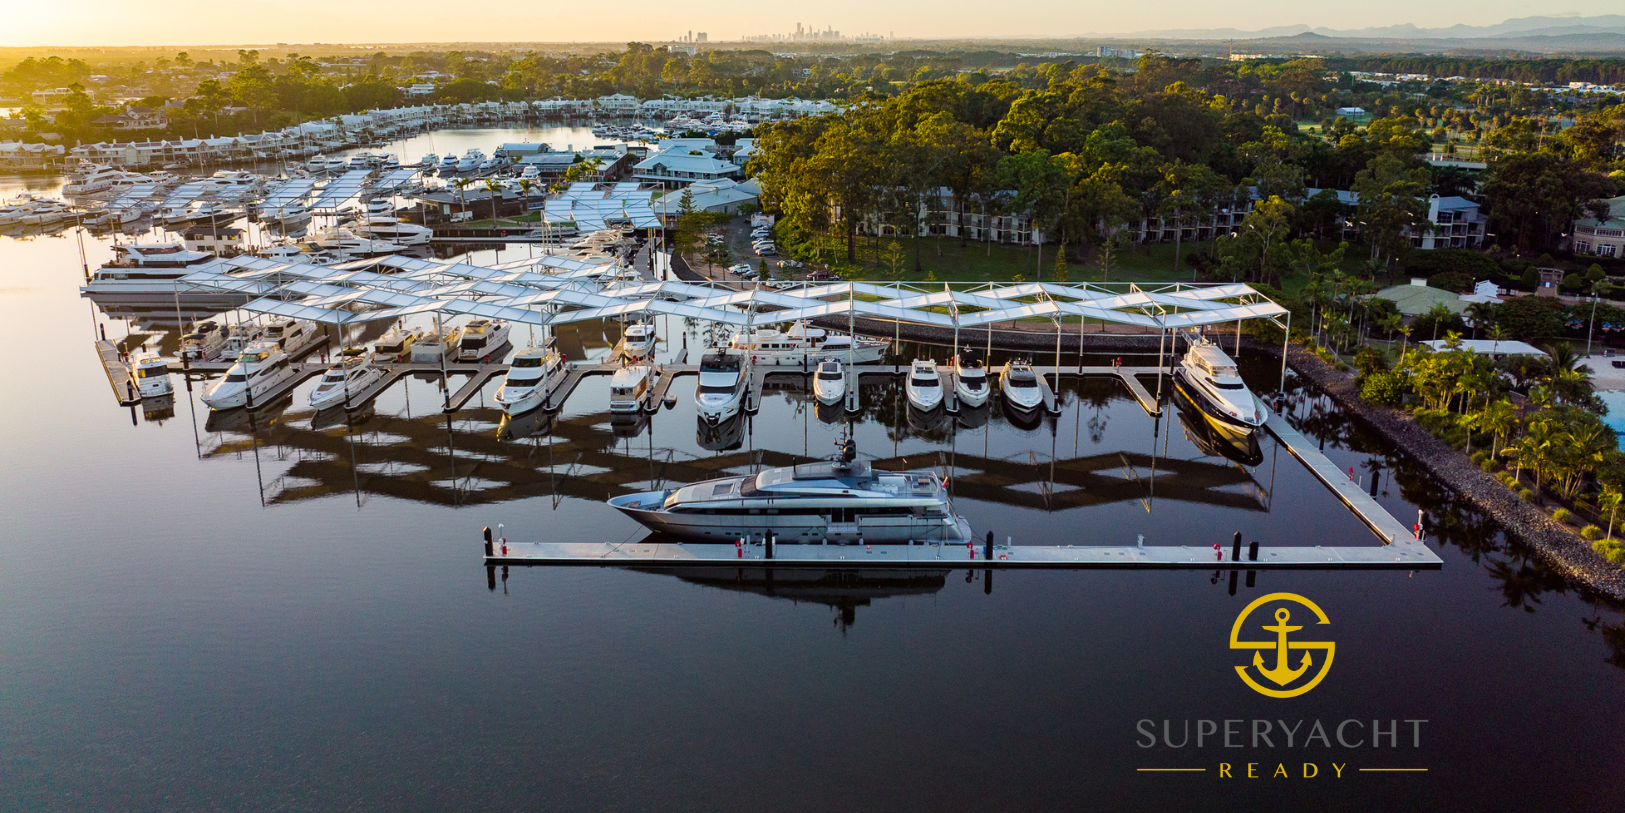 Superyacht Ready Accreditation for Sanctuary Cove Marina